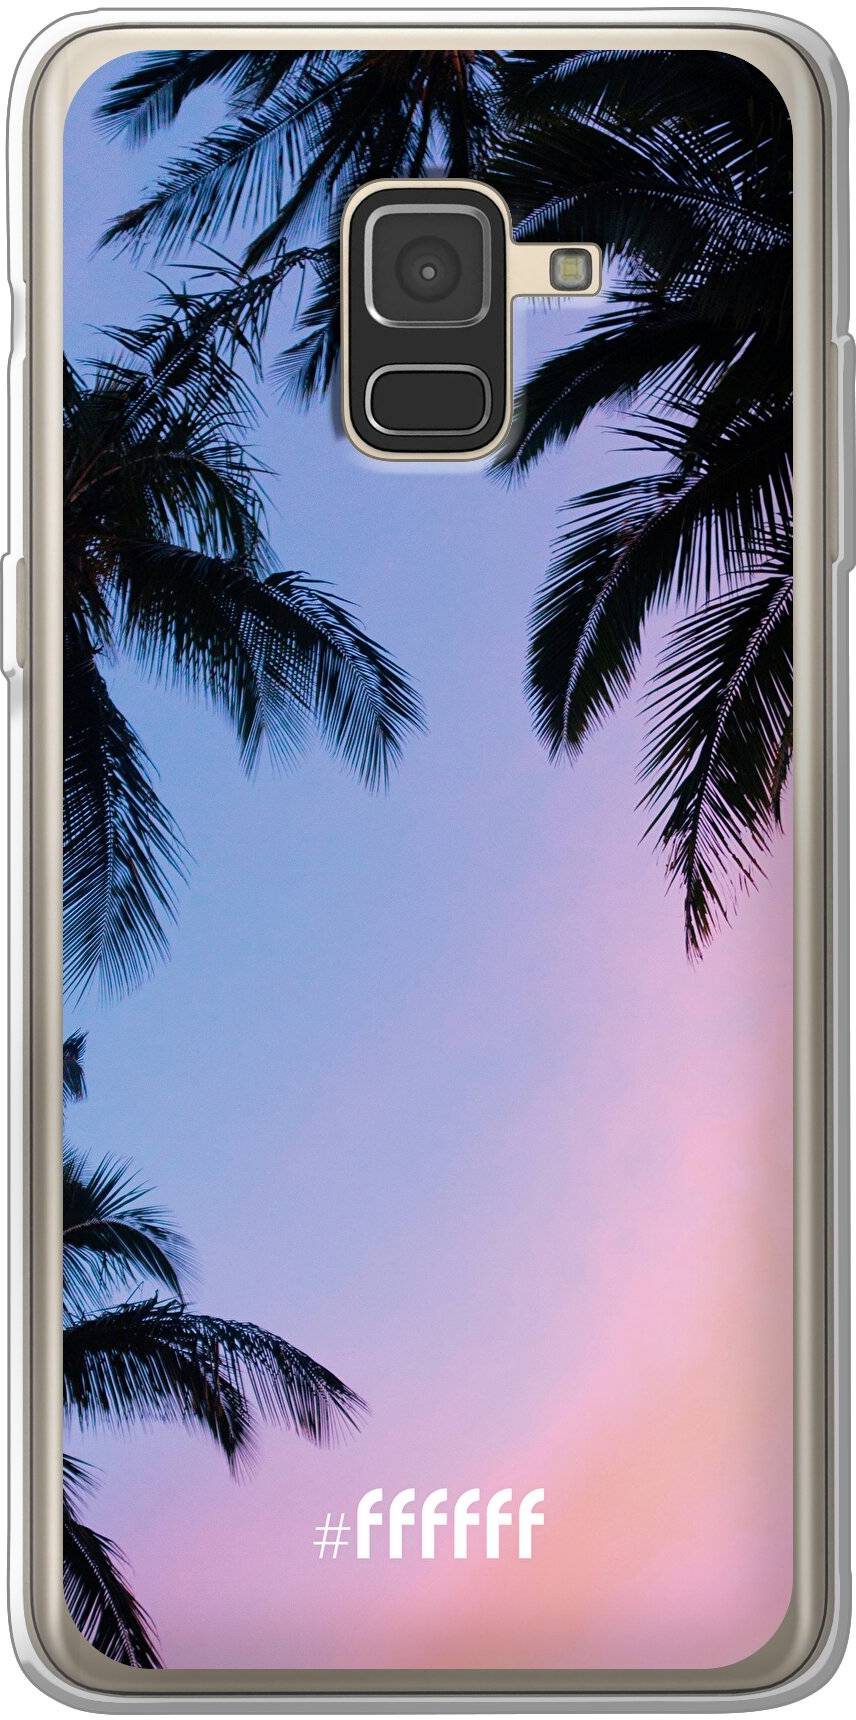 Sunset Palms Galaxy A8 (2018)